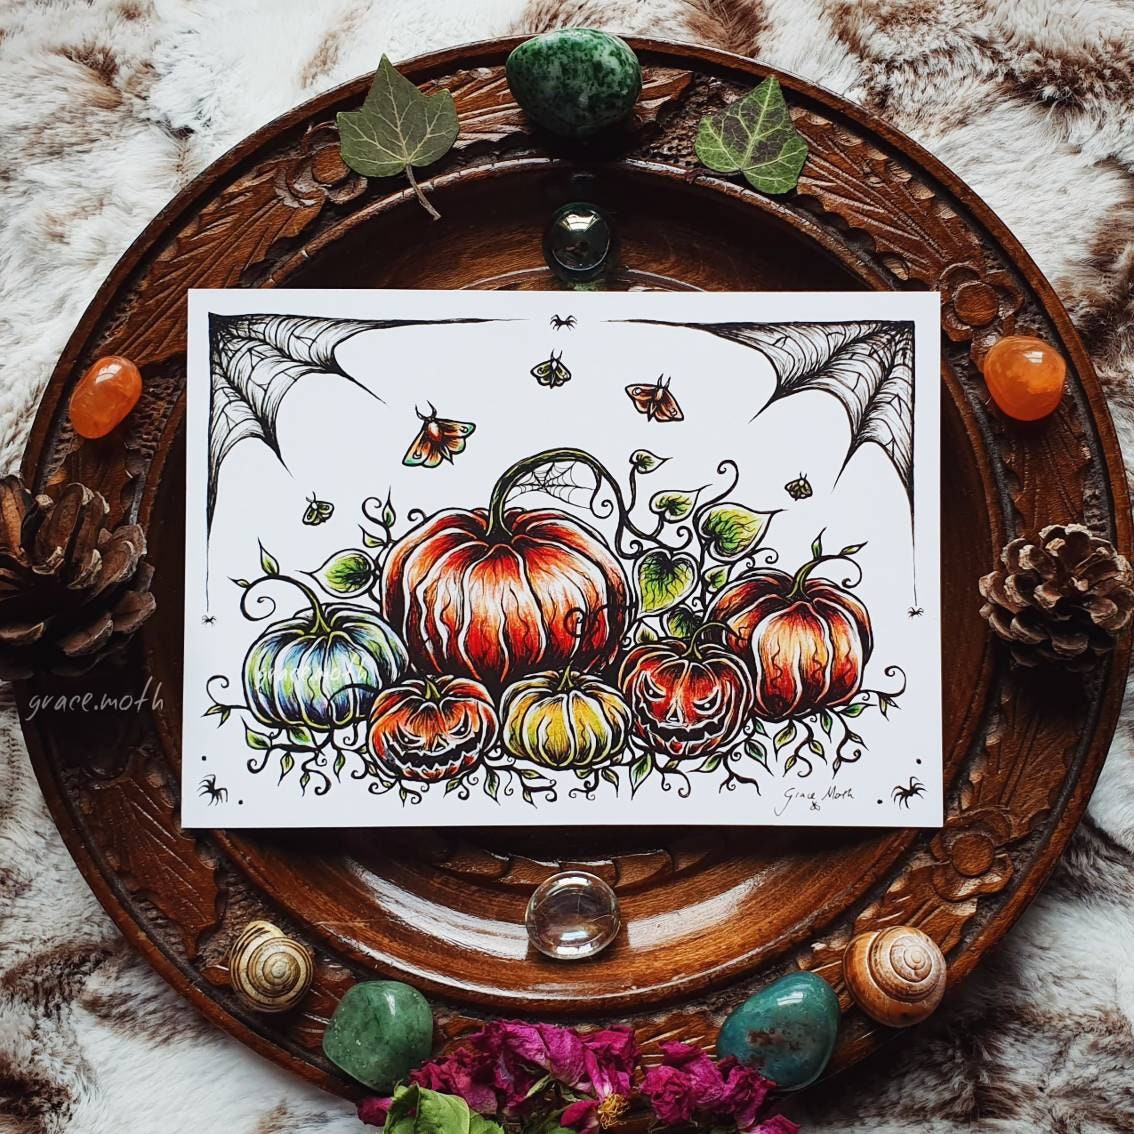 Pumpkin Patch - A6 Halloween print by Grace Moth - 5.8 x 4.1